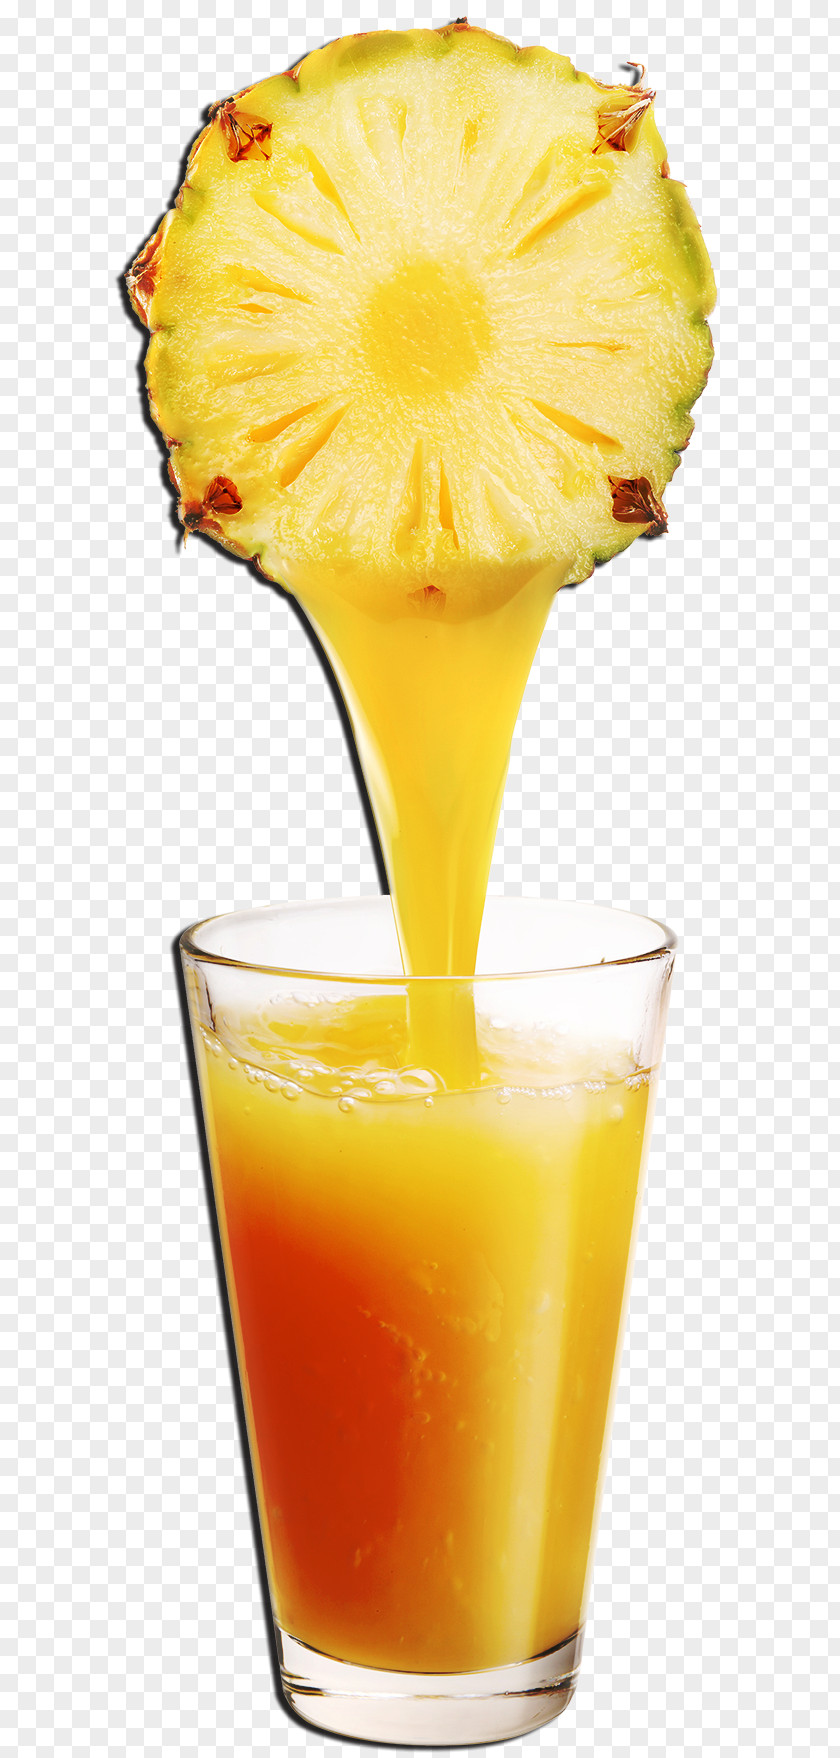 Pineapple Orange Juice Raw Foodism Vegetable Fruit PNG